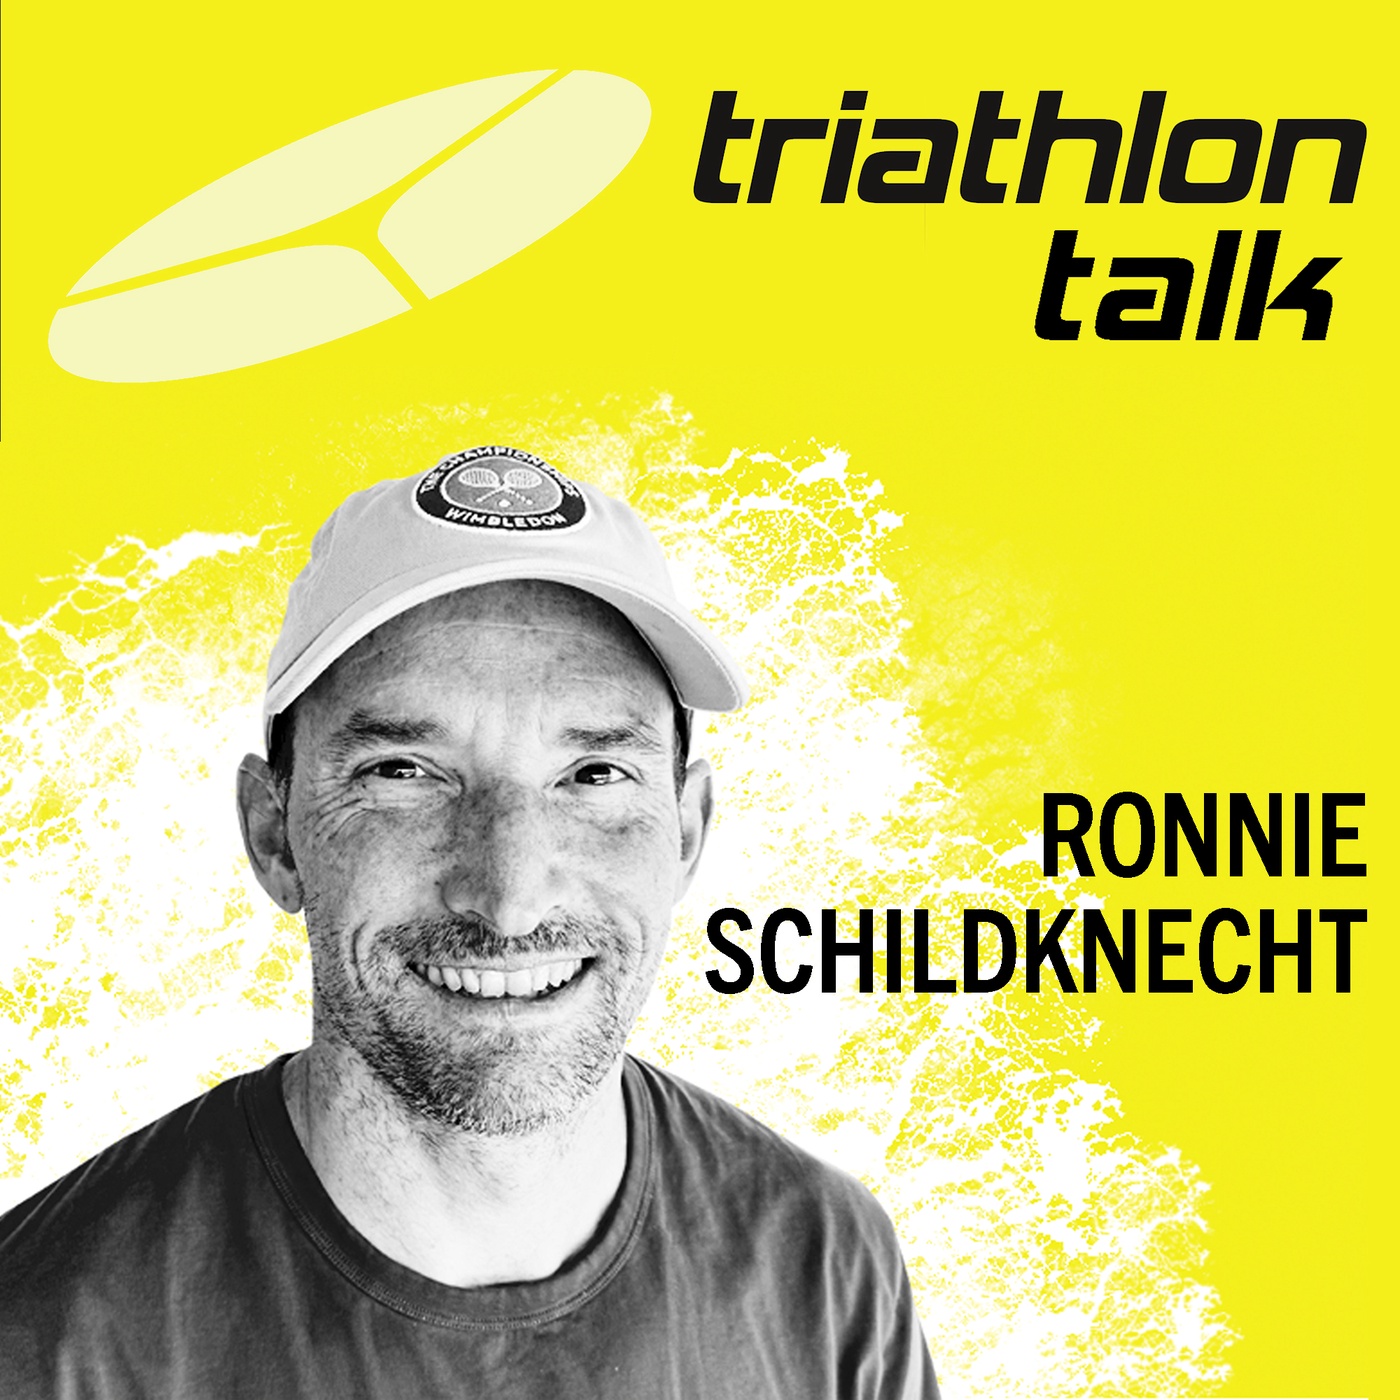 Ronnie Schildknecht: Wie viele Triathlonprofis sind Millionäre?